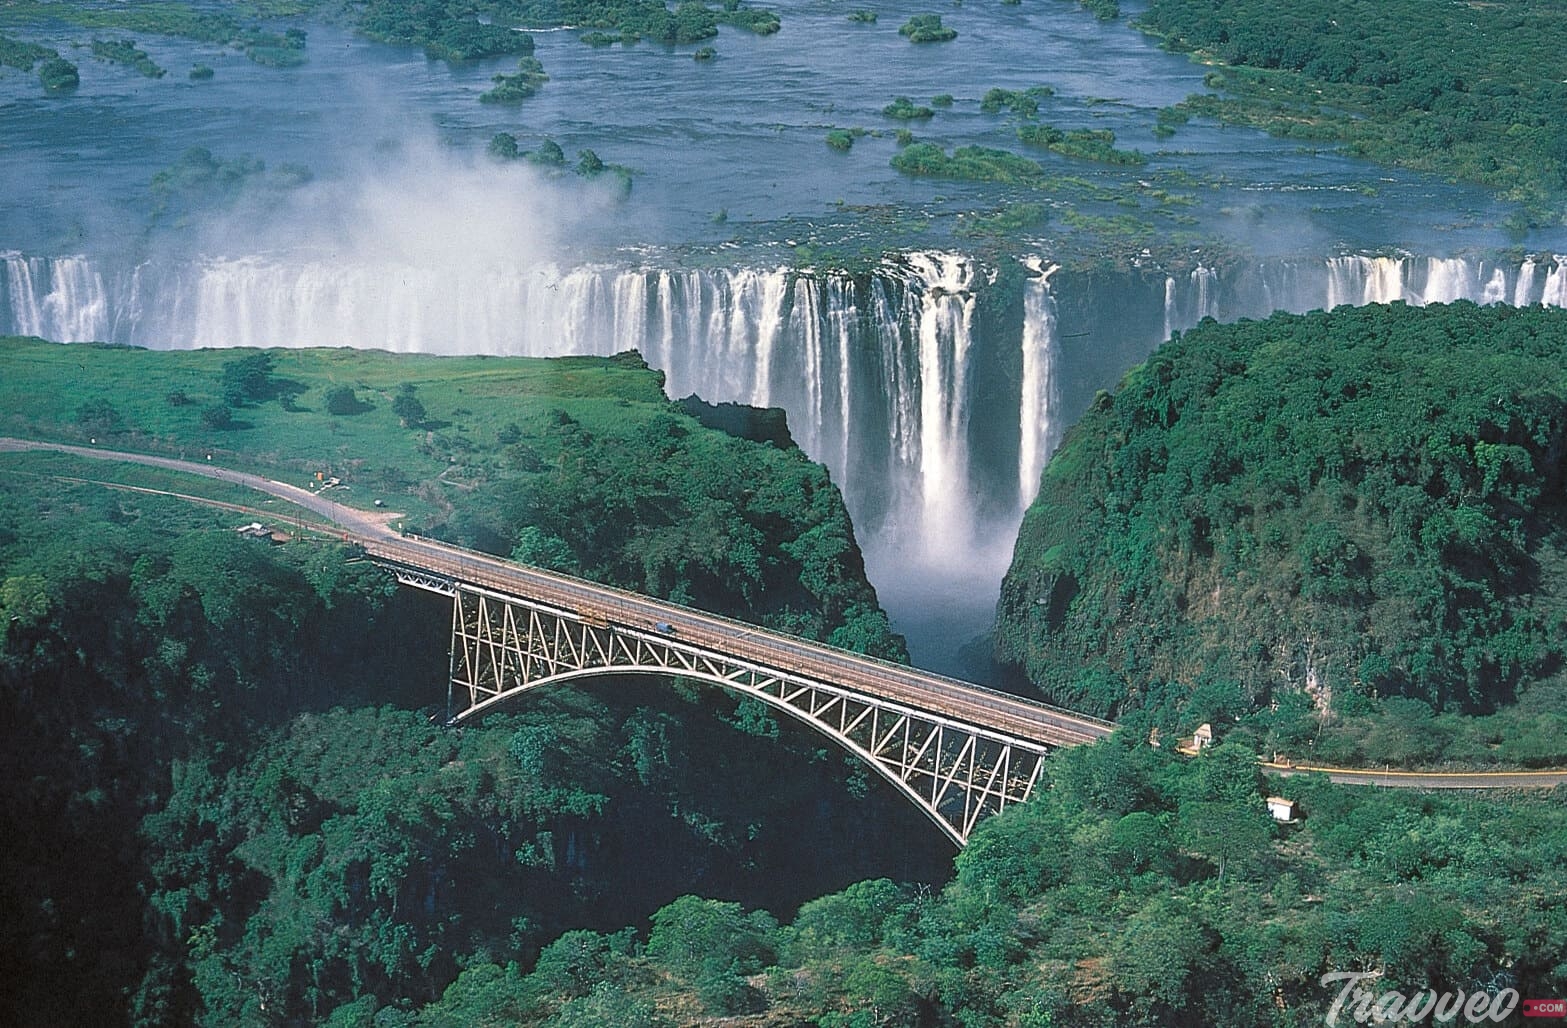 السياحة في زامبيا